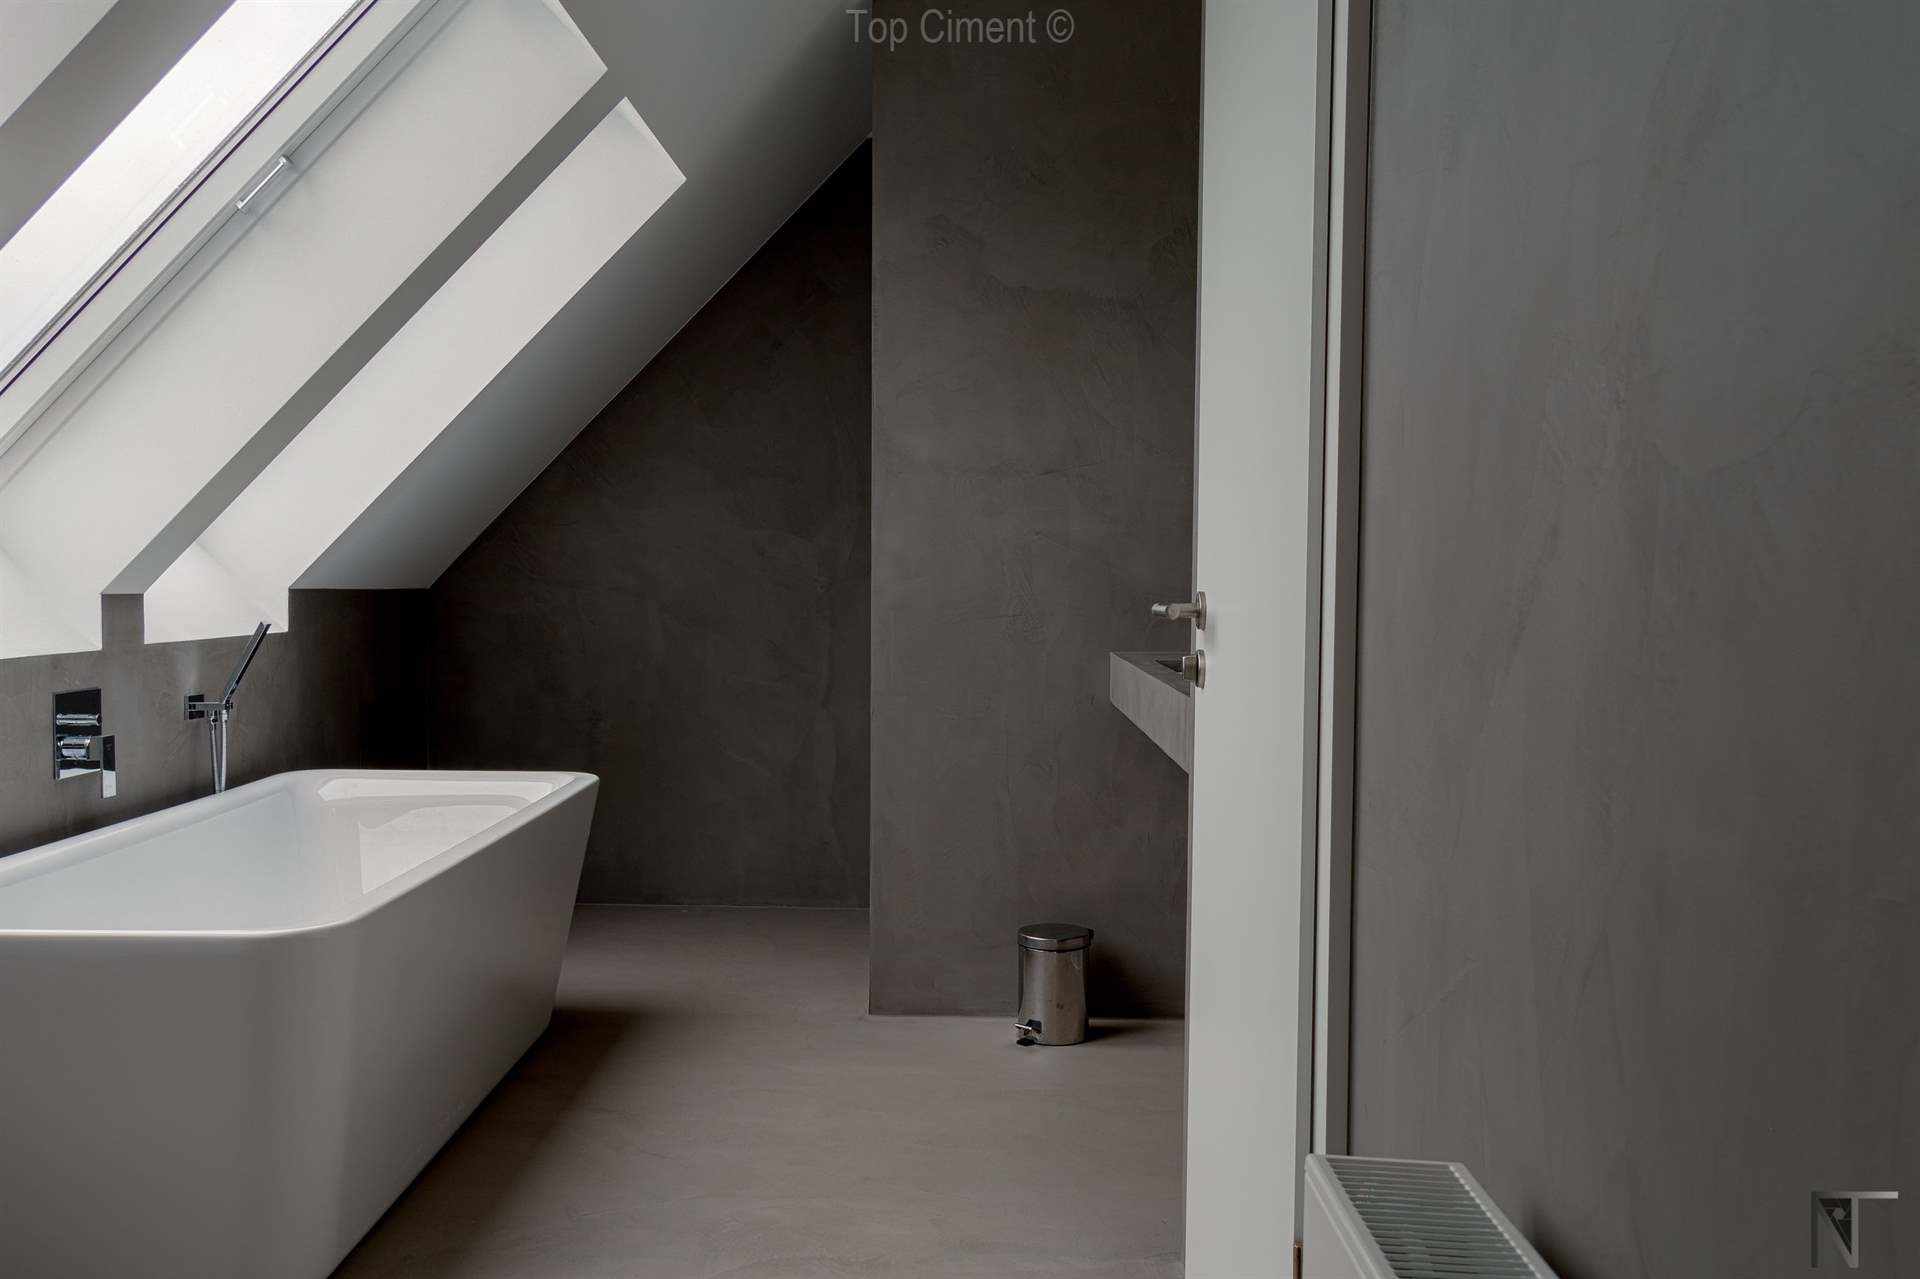 Fotos de baño de azulejos reformado con Microfino Topciment